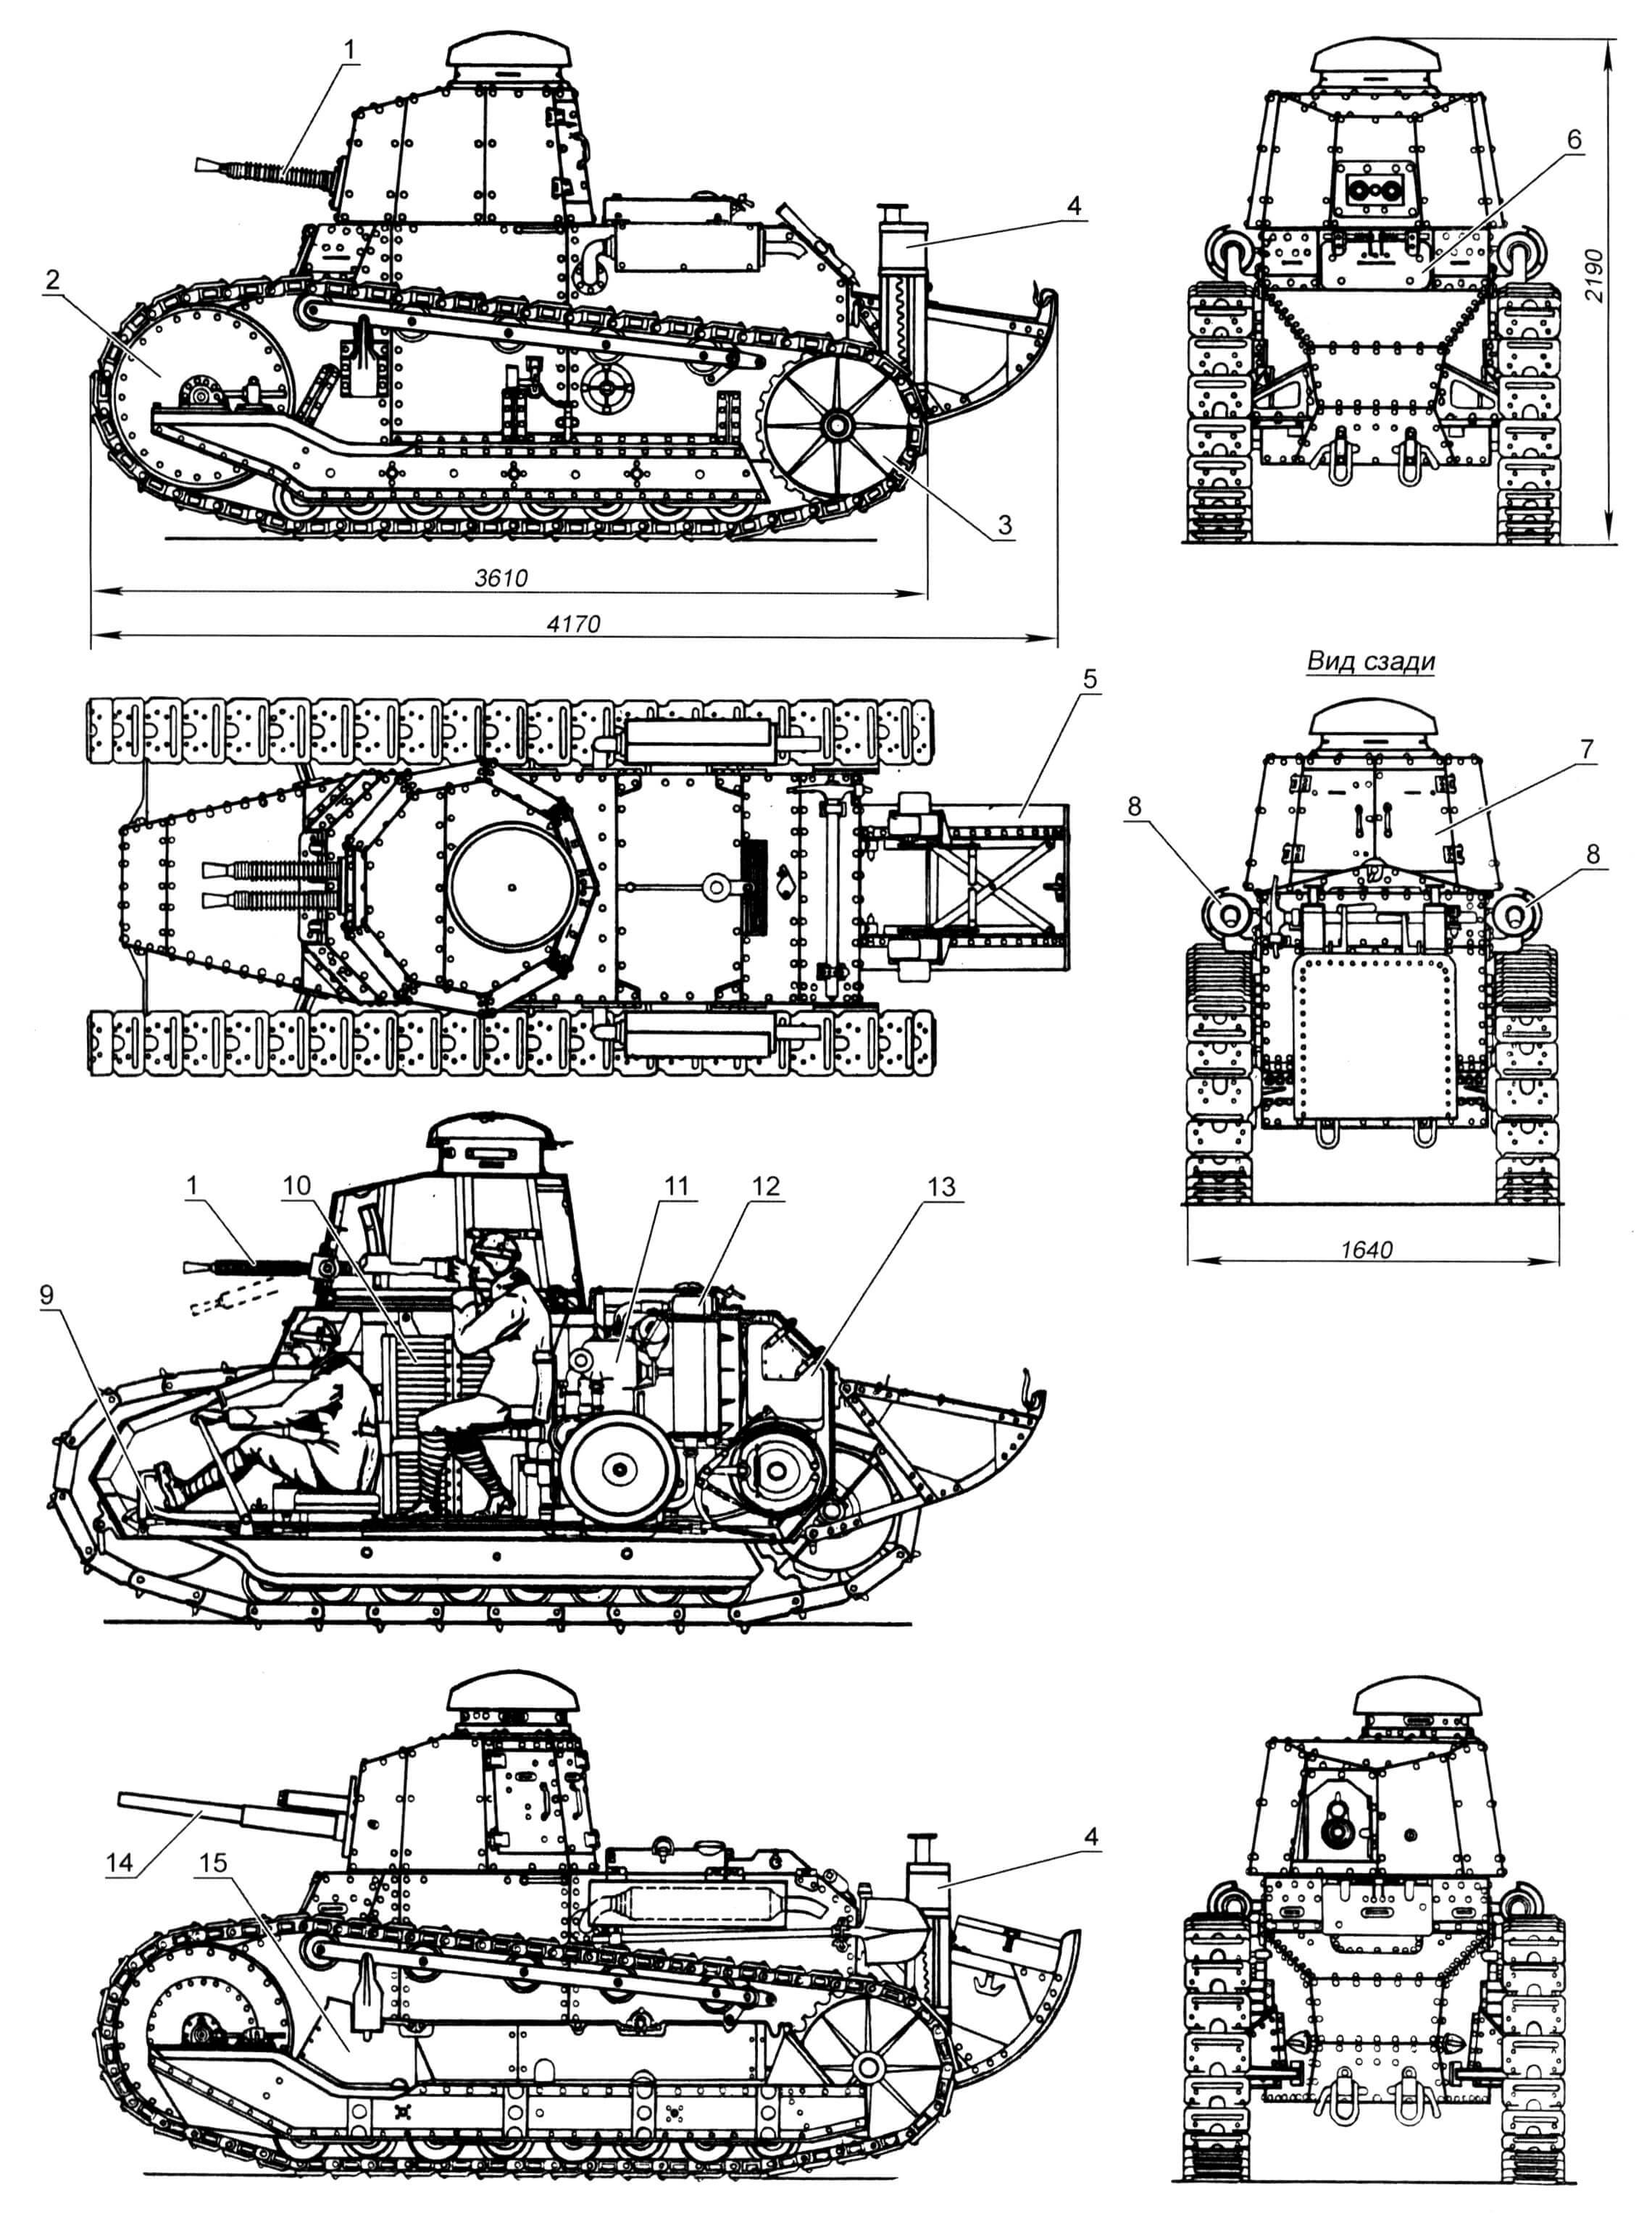 Легкий ганк «Фиат-3000»: 1- 6,5-мм спаренный пулемет обр. 1929 года; 2 - направляющее колесо; 3 - ведущее колесо; 4 - домкрат; 5 - «хвост»; 6 - люк водителя; 7 - двустворчатый башенный люк; 8 - глушитель; 9 - педаль тормоза; 10 - стеллажи для боекомплекта; 11 - двигатель; 12 - радиатор; 13 - бензобак; 14 - 37-мм пушка; 15 - фальшборт